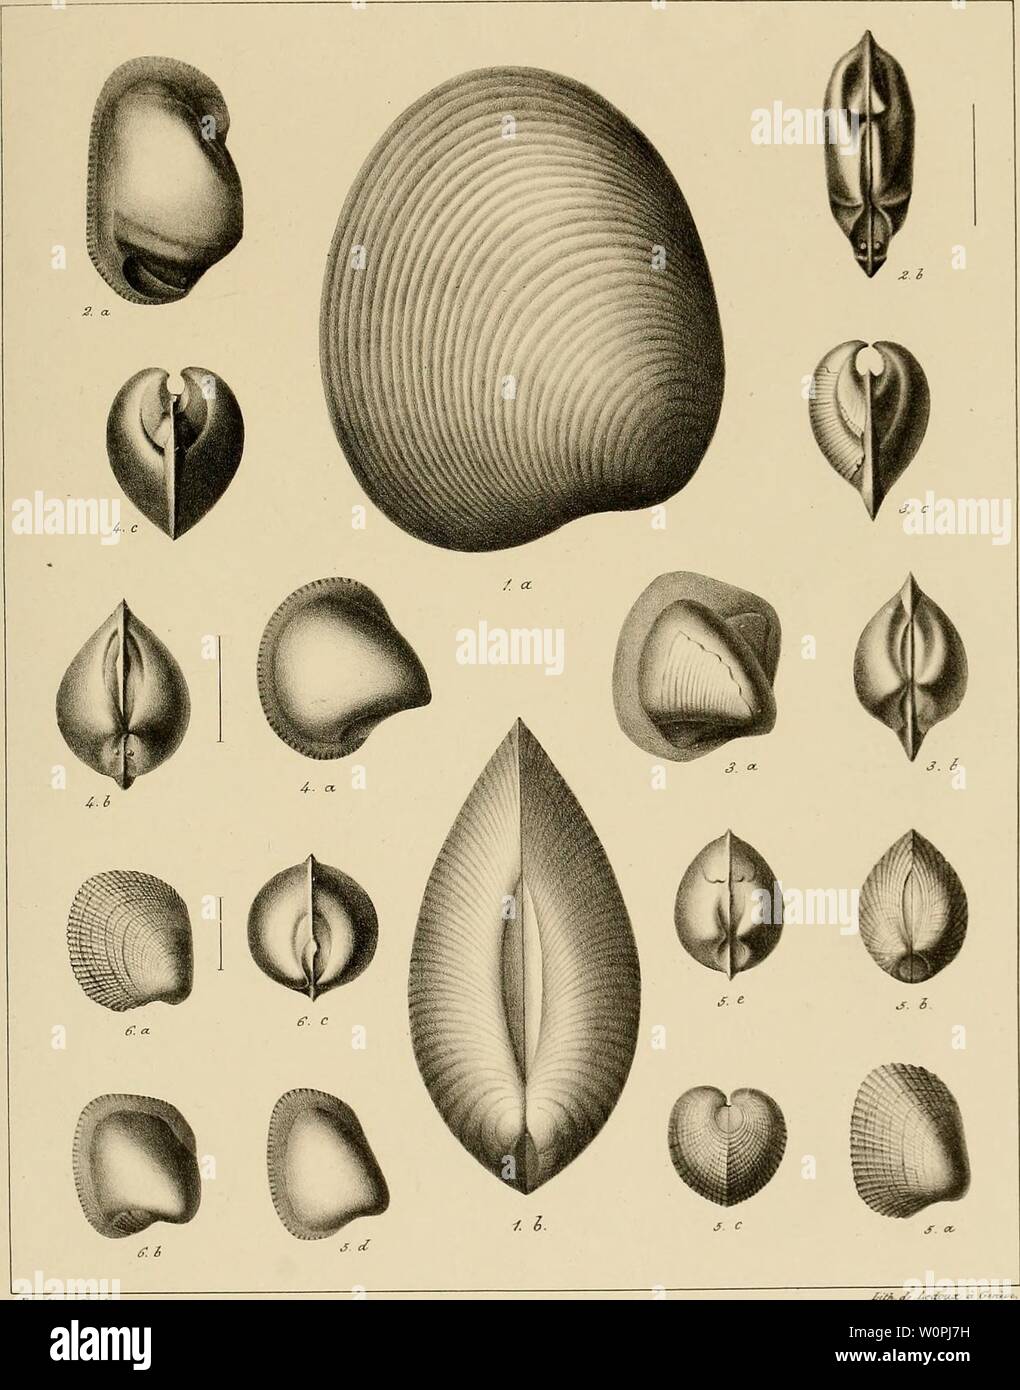 Archive image from page 70 of Description des mollusques fossiles qui. Description des mollusques fossiles qui se trouvent dans les grès verts des environs de Genève descriptiondesmo01pict Year: 1847-1853  PI. 33    J'ùrc/int hfh Fi§. 1. Astarte uritis Piô. 1. Crassatella Saxoneti Fi6. 3. C. Sal)audiana. Fi6. 4.C.Fisiana Fi6. 5. Cardita Constantii Fi. 6. C. rotundata. Stock Photo